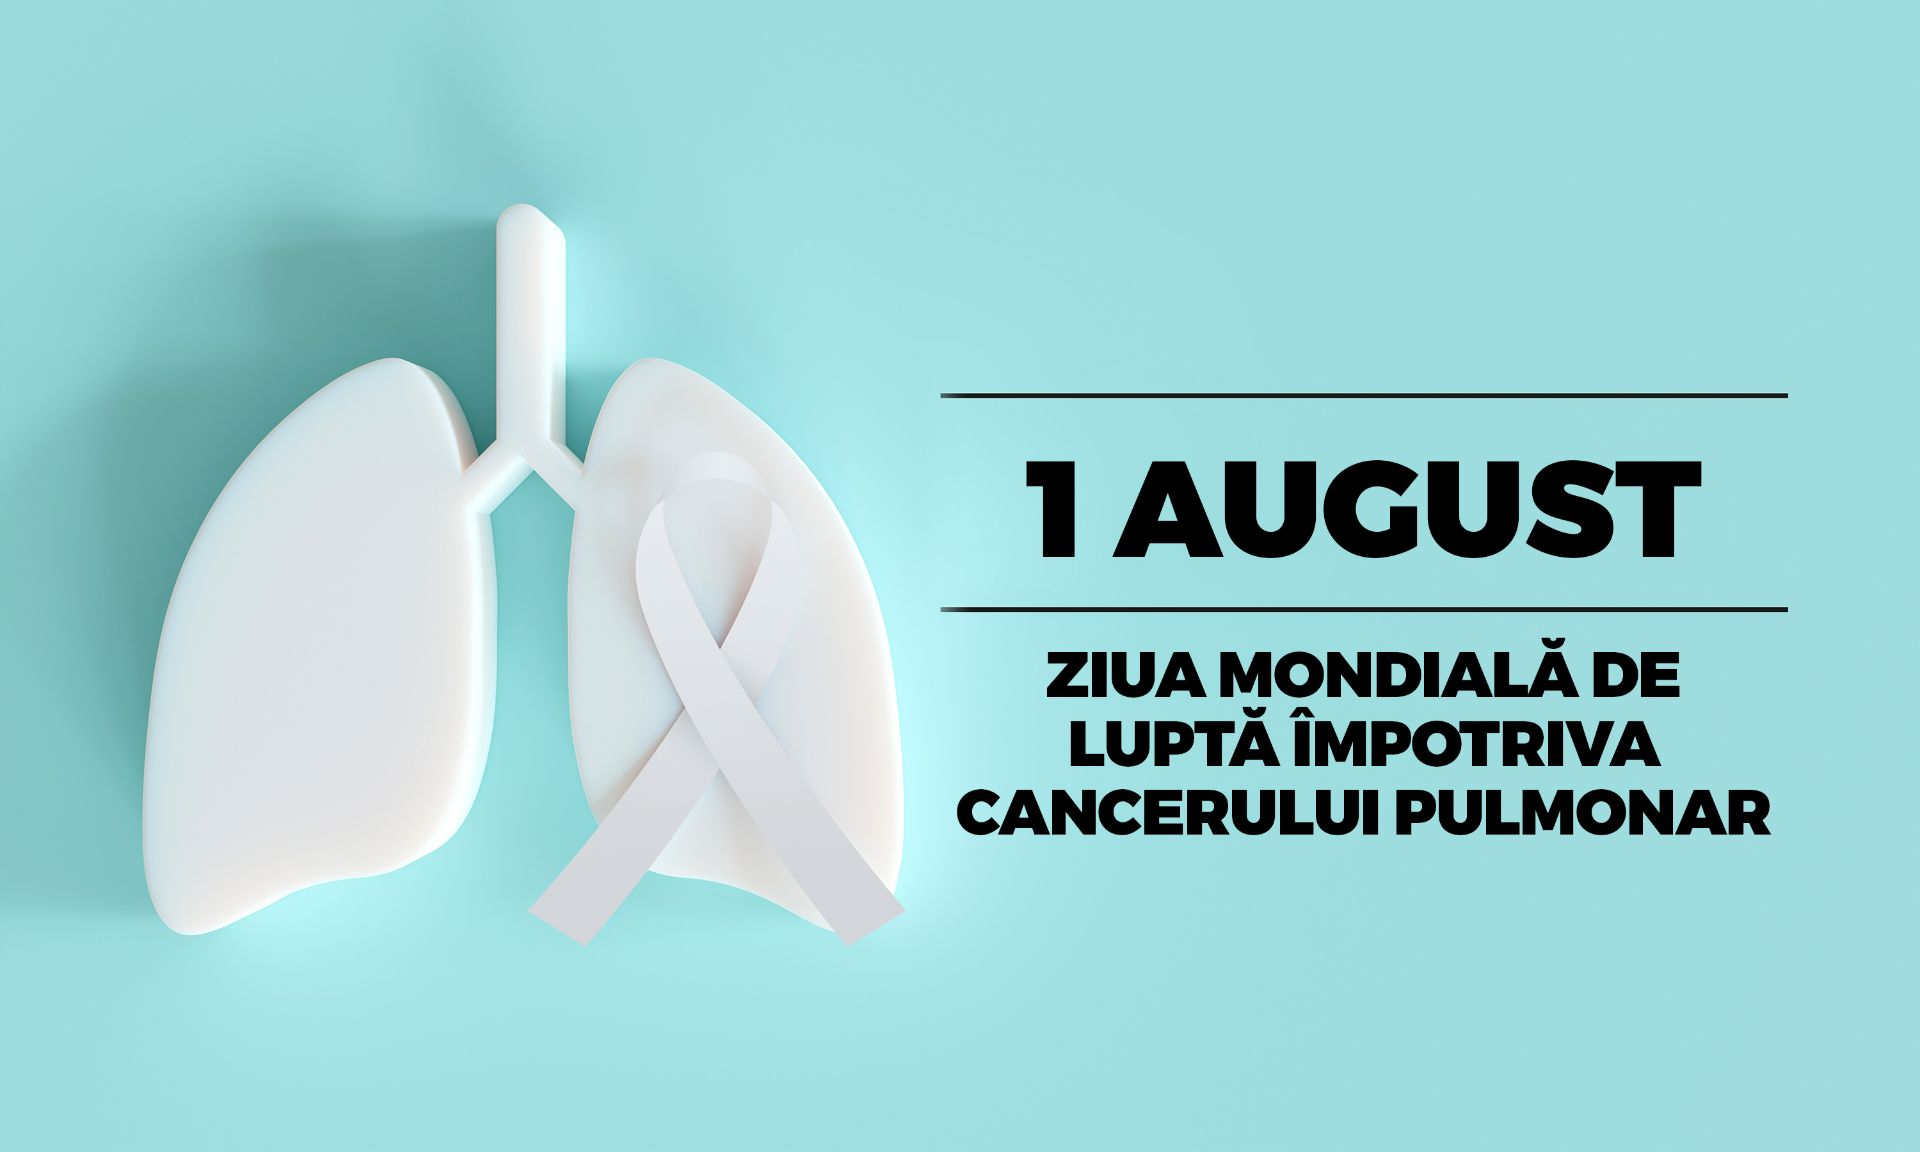 Ziua Mondială de Luptă Împotriva Cancerului Pulmonar, marcată astăzi